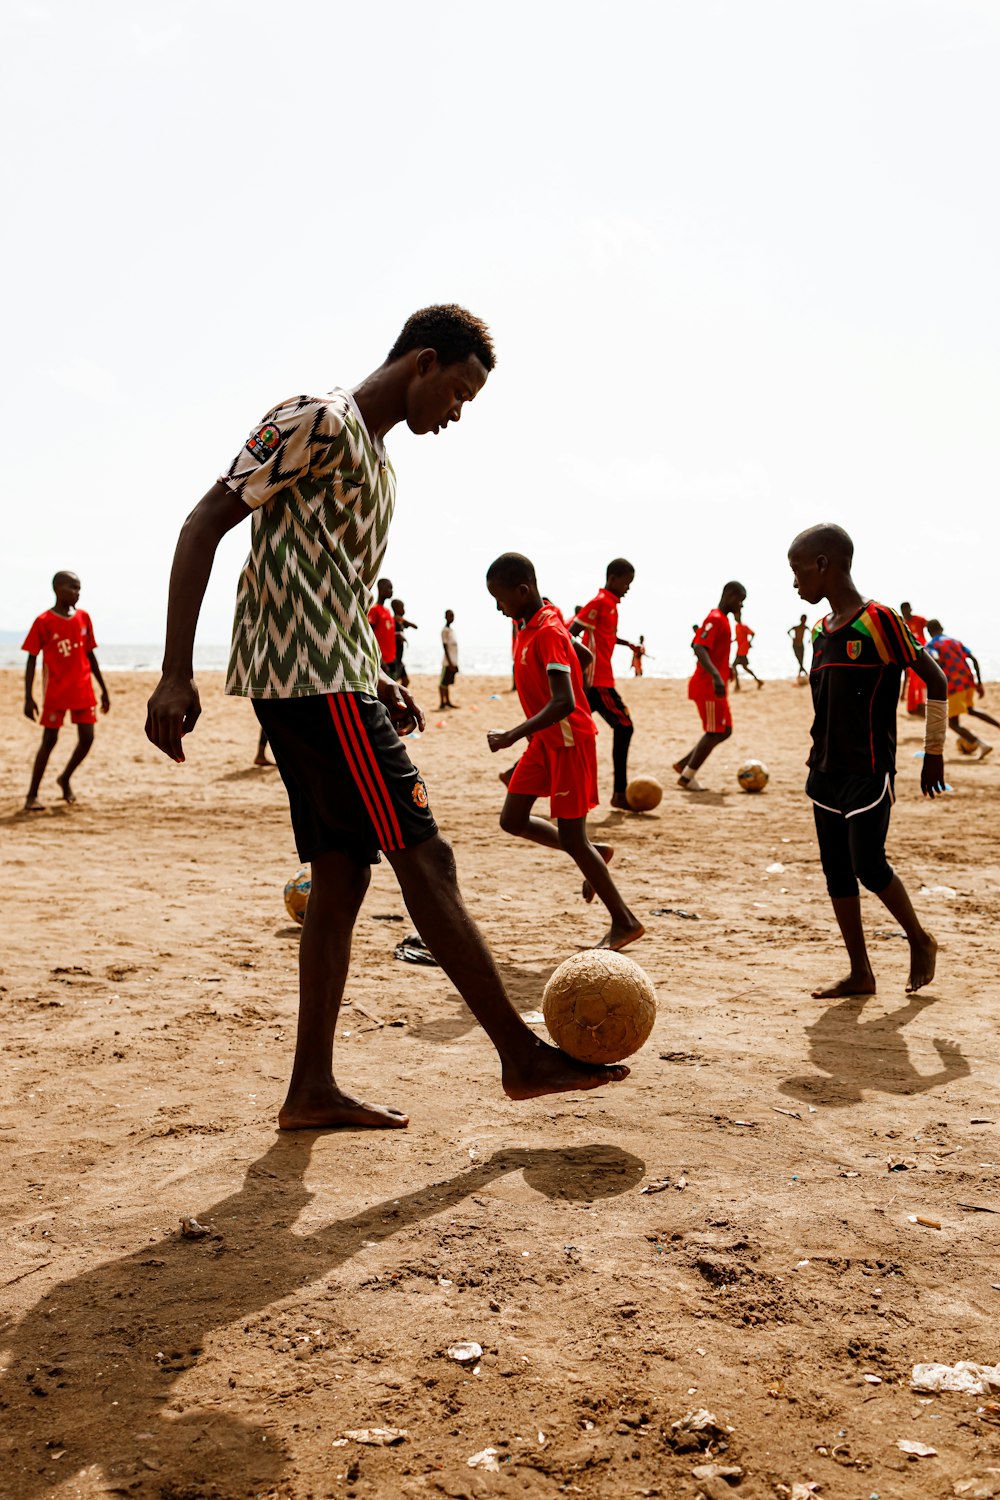 Un grupo de jóvenes jugando un partido de fútbol